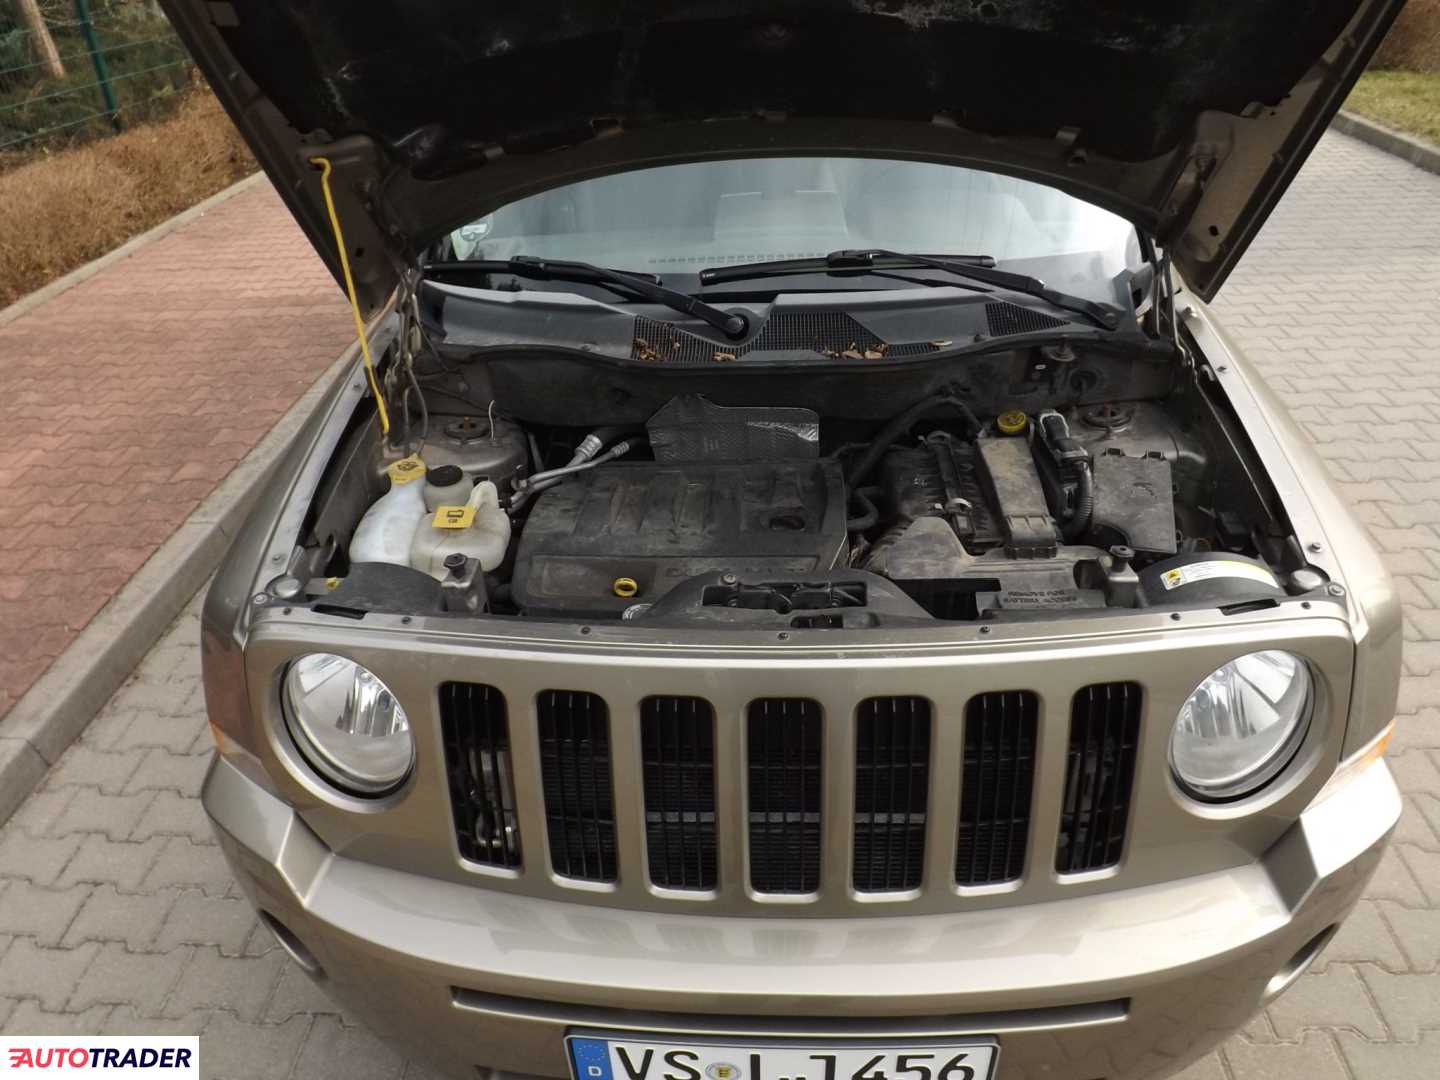 Jeep Patriot 2.4 benzyna 170 KM 2009r. (Żyrardów